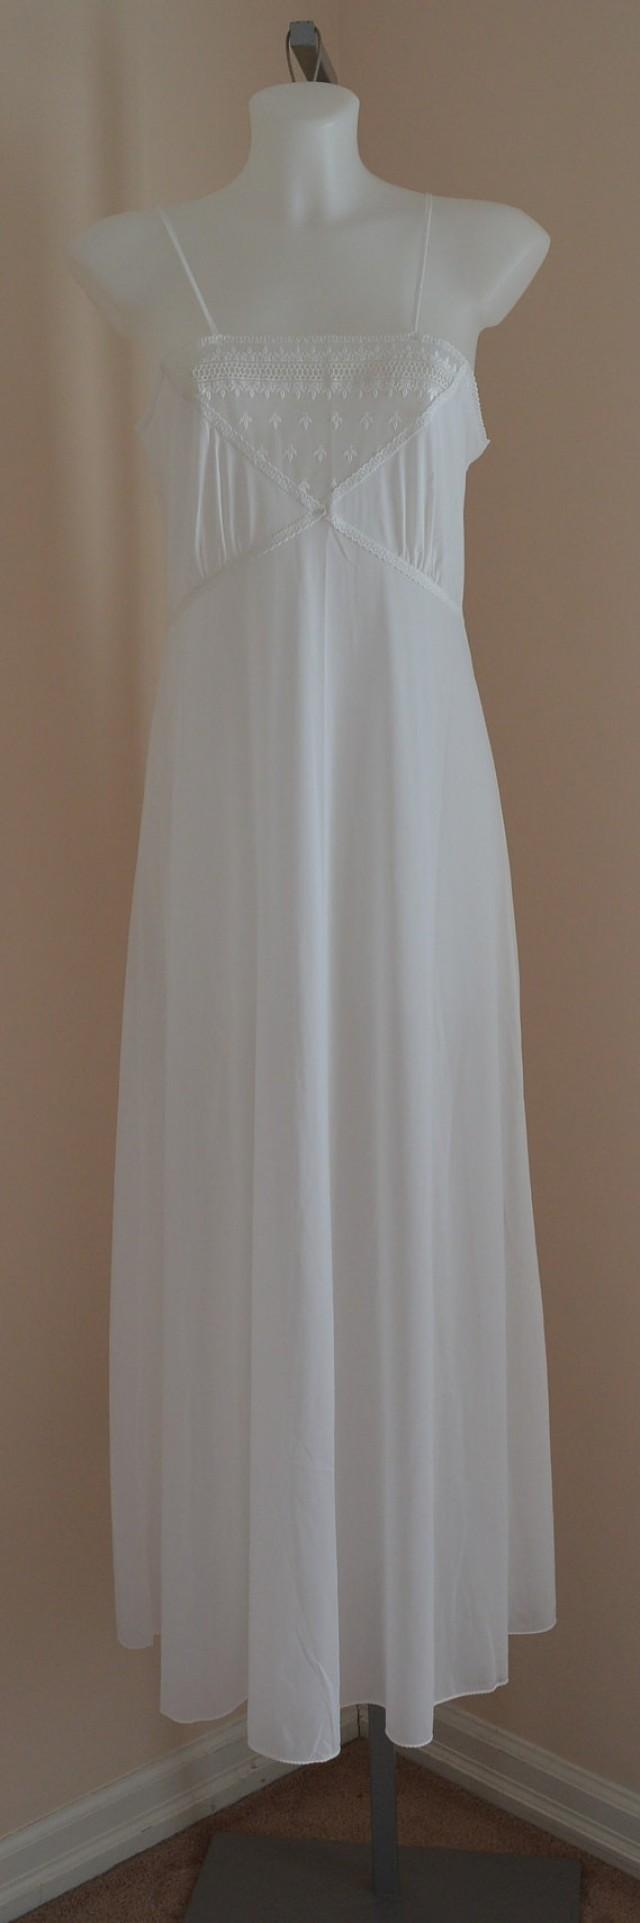 Vintage White Nightgown, Vintage ...